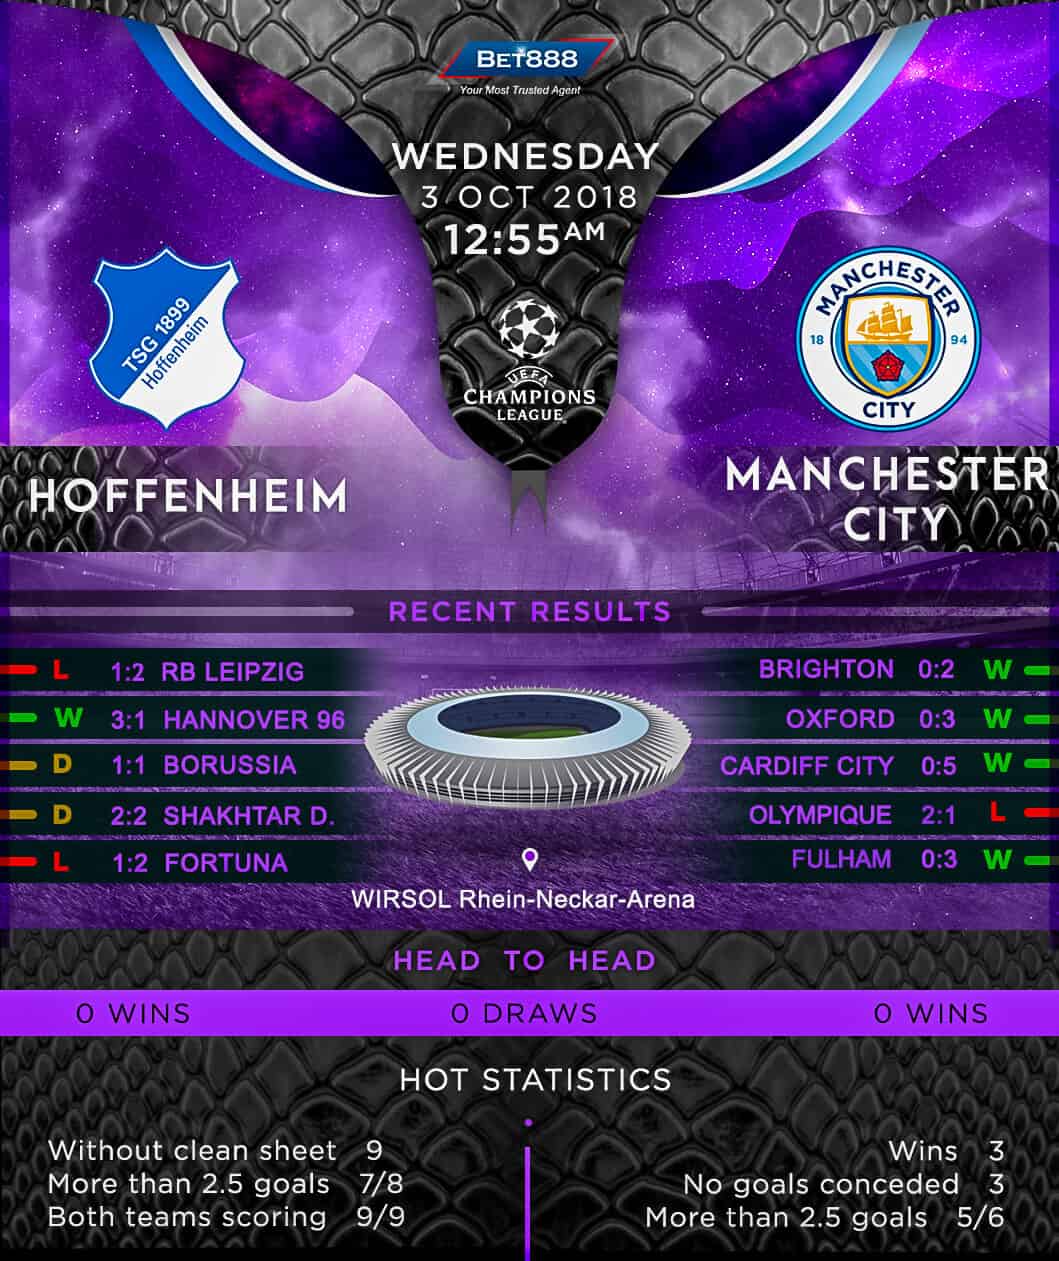 Hoffenheim vs Manchester City 03/10/18